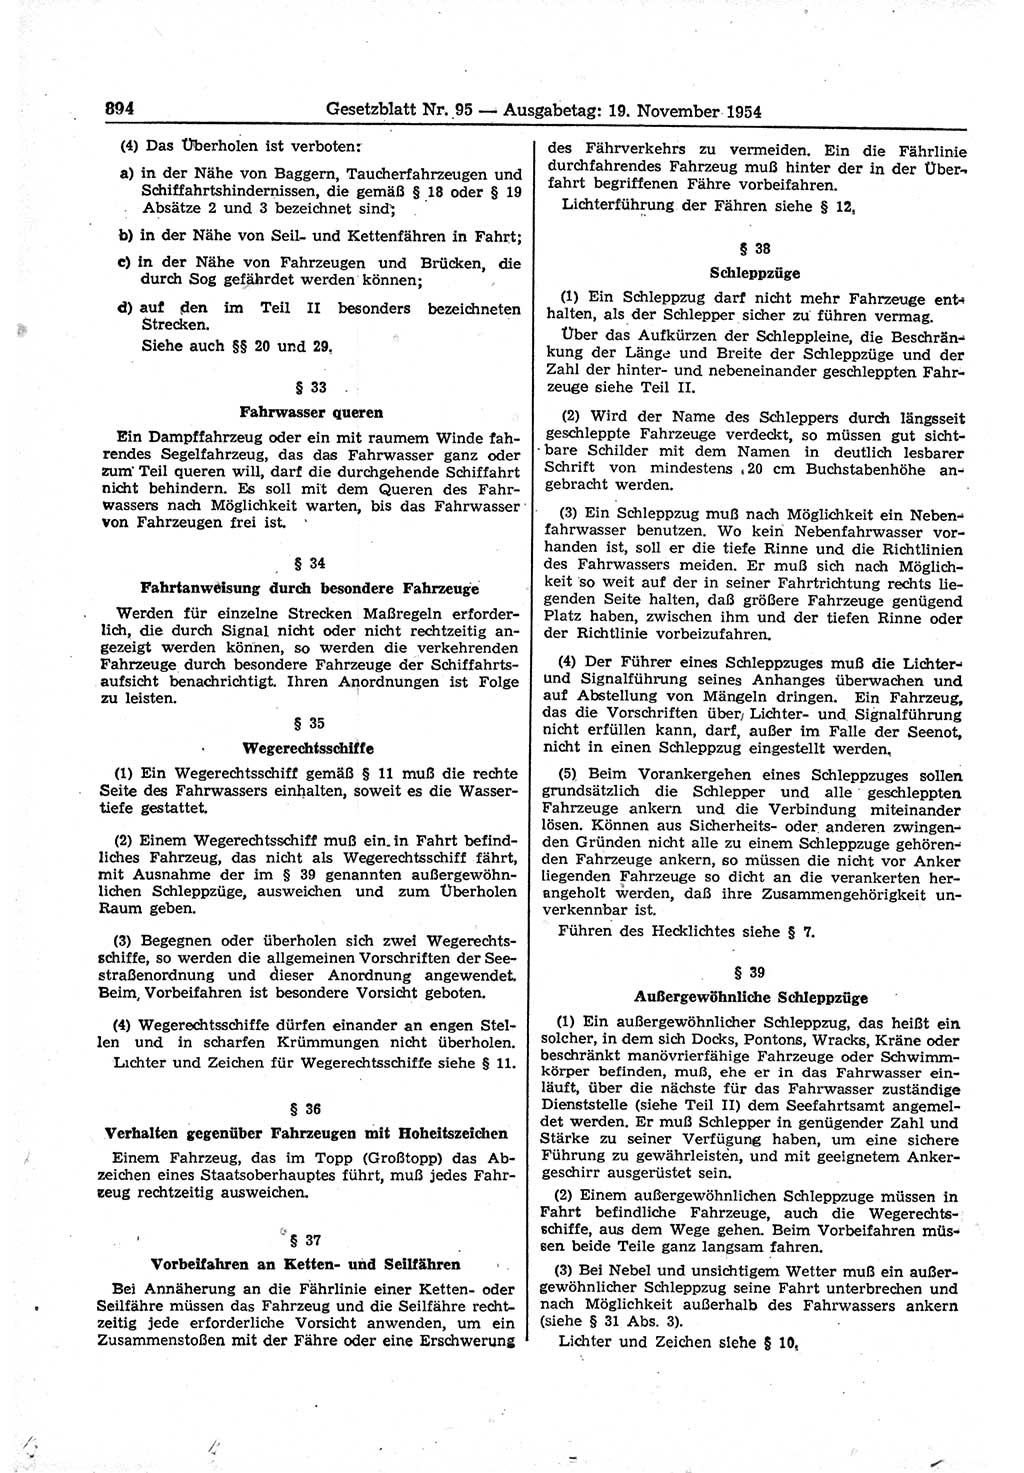 Gesetzblatt (GBl.) der Deutschen Demokratischen Republik (DDR) 1954, Seite 894 (GBl. DDR 1954, S. 894)